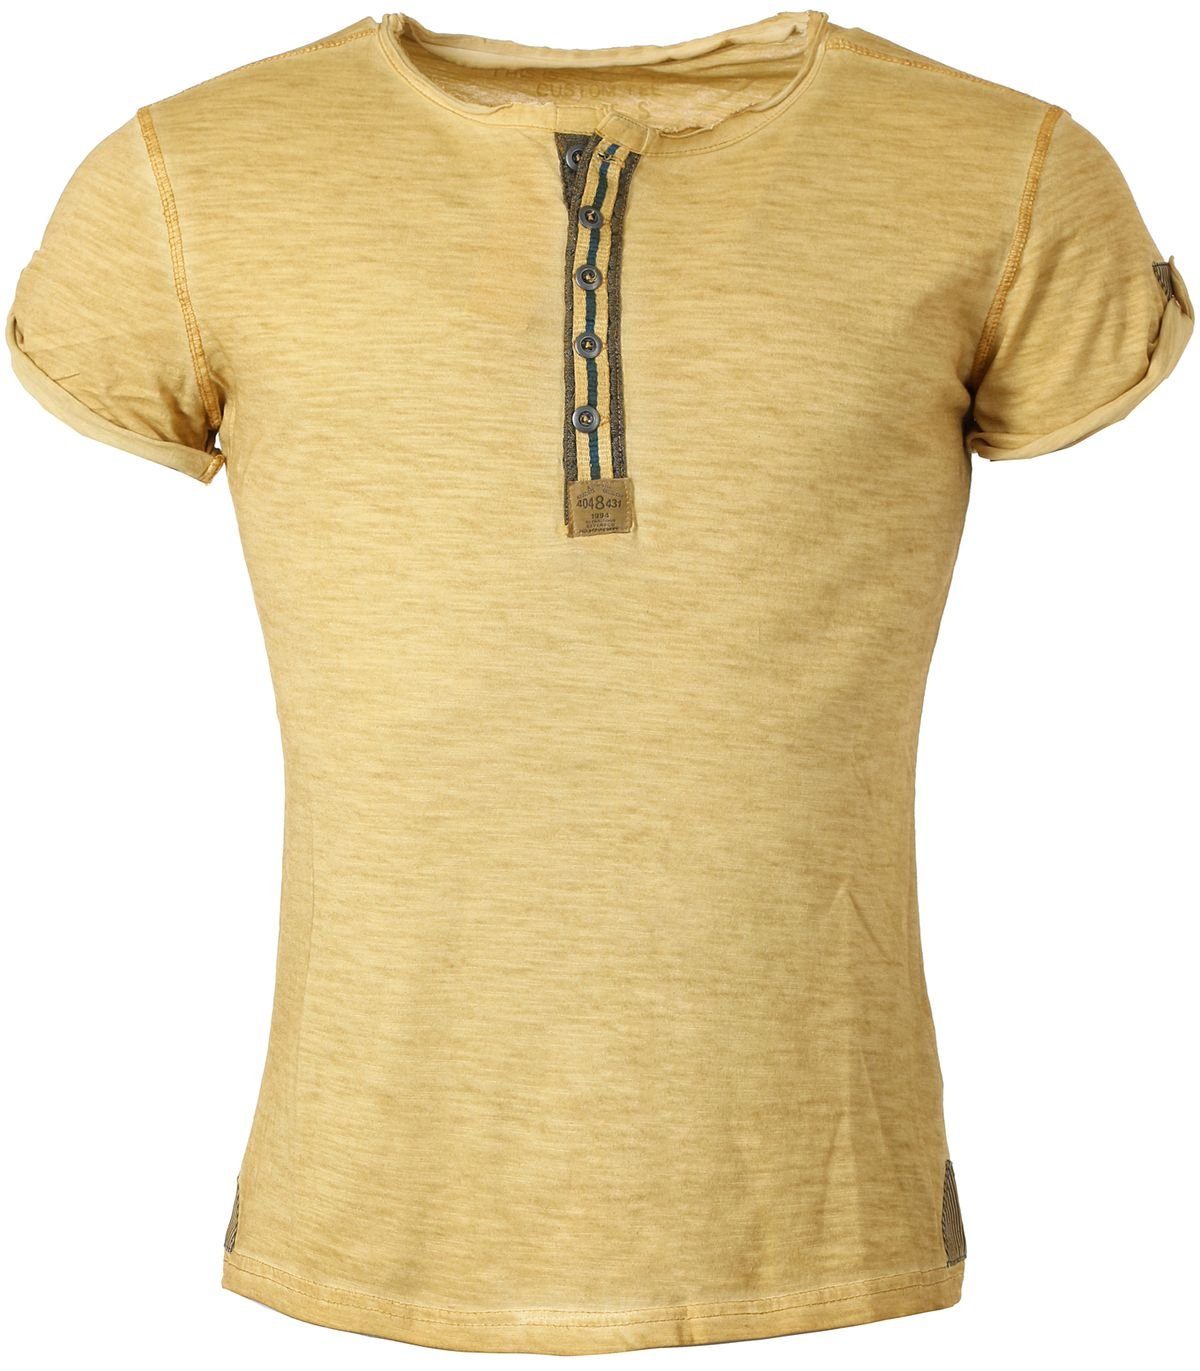 Key Largo T-Shirt für Herren Arena button vintage Look MT00023 mit Knopfleiste unifarben kurzarm slim fit Honey Yellow